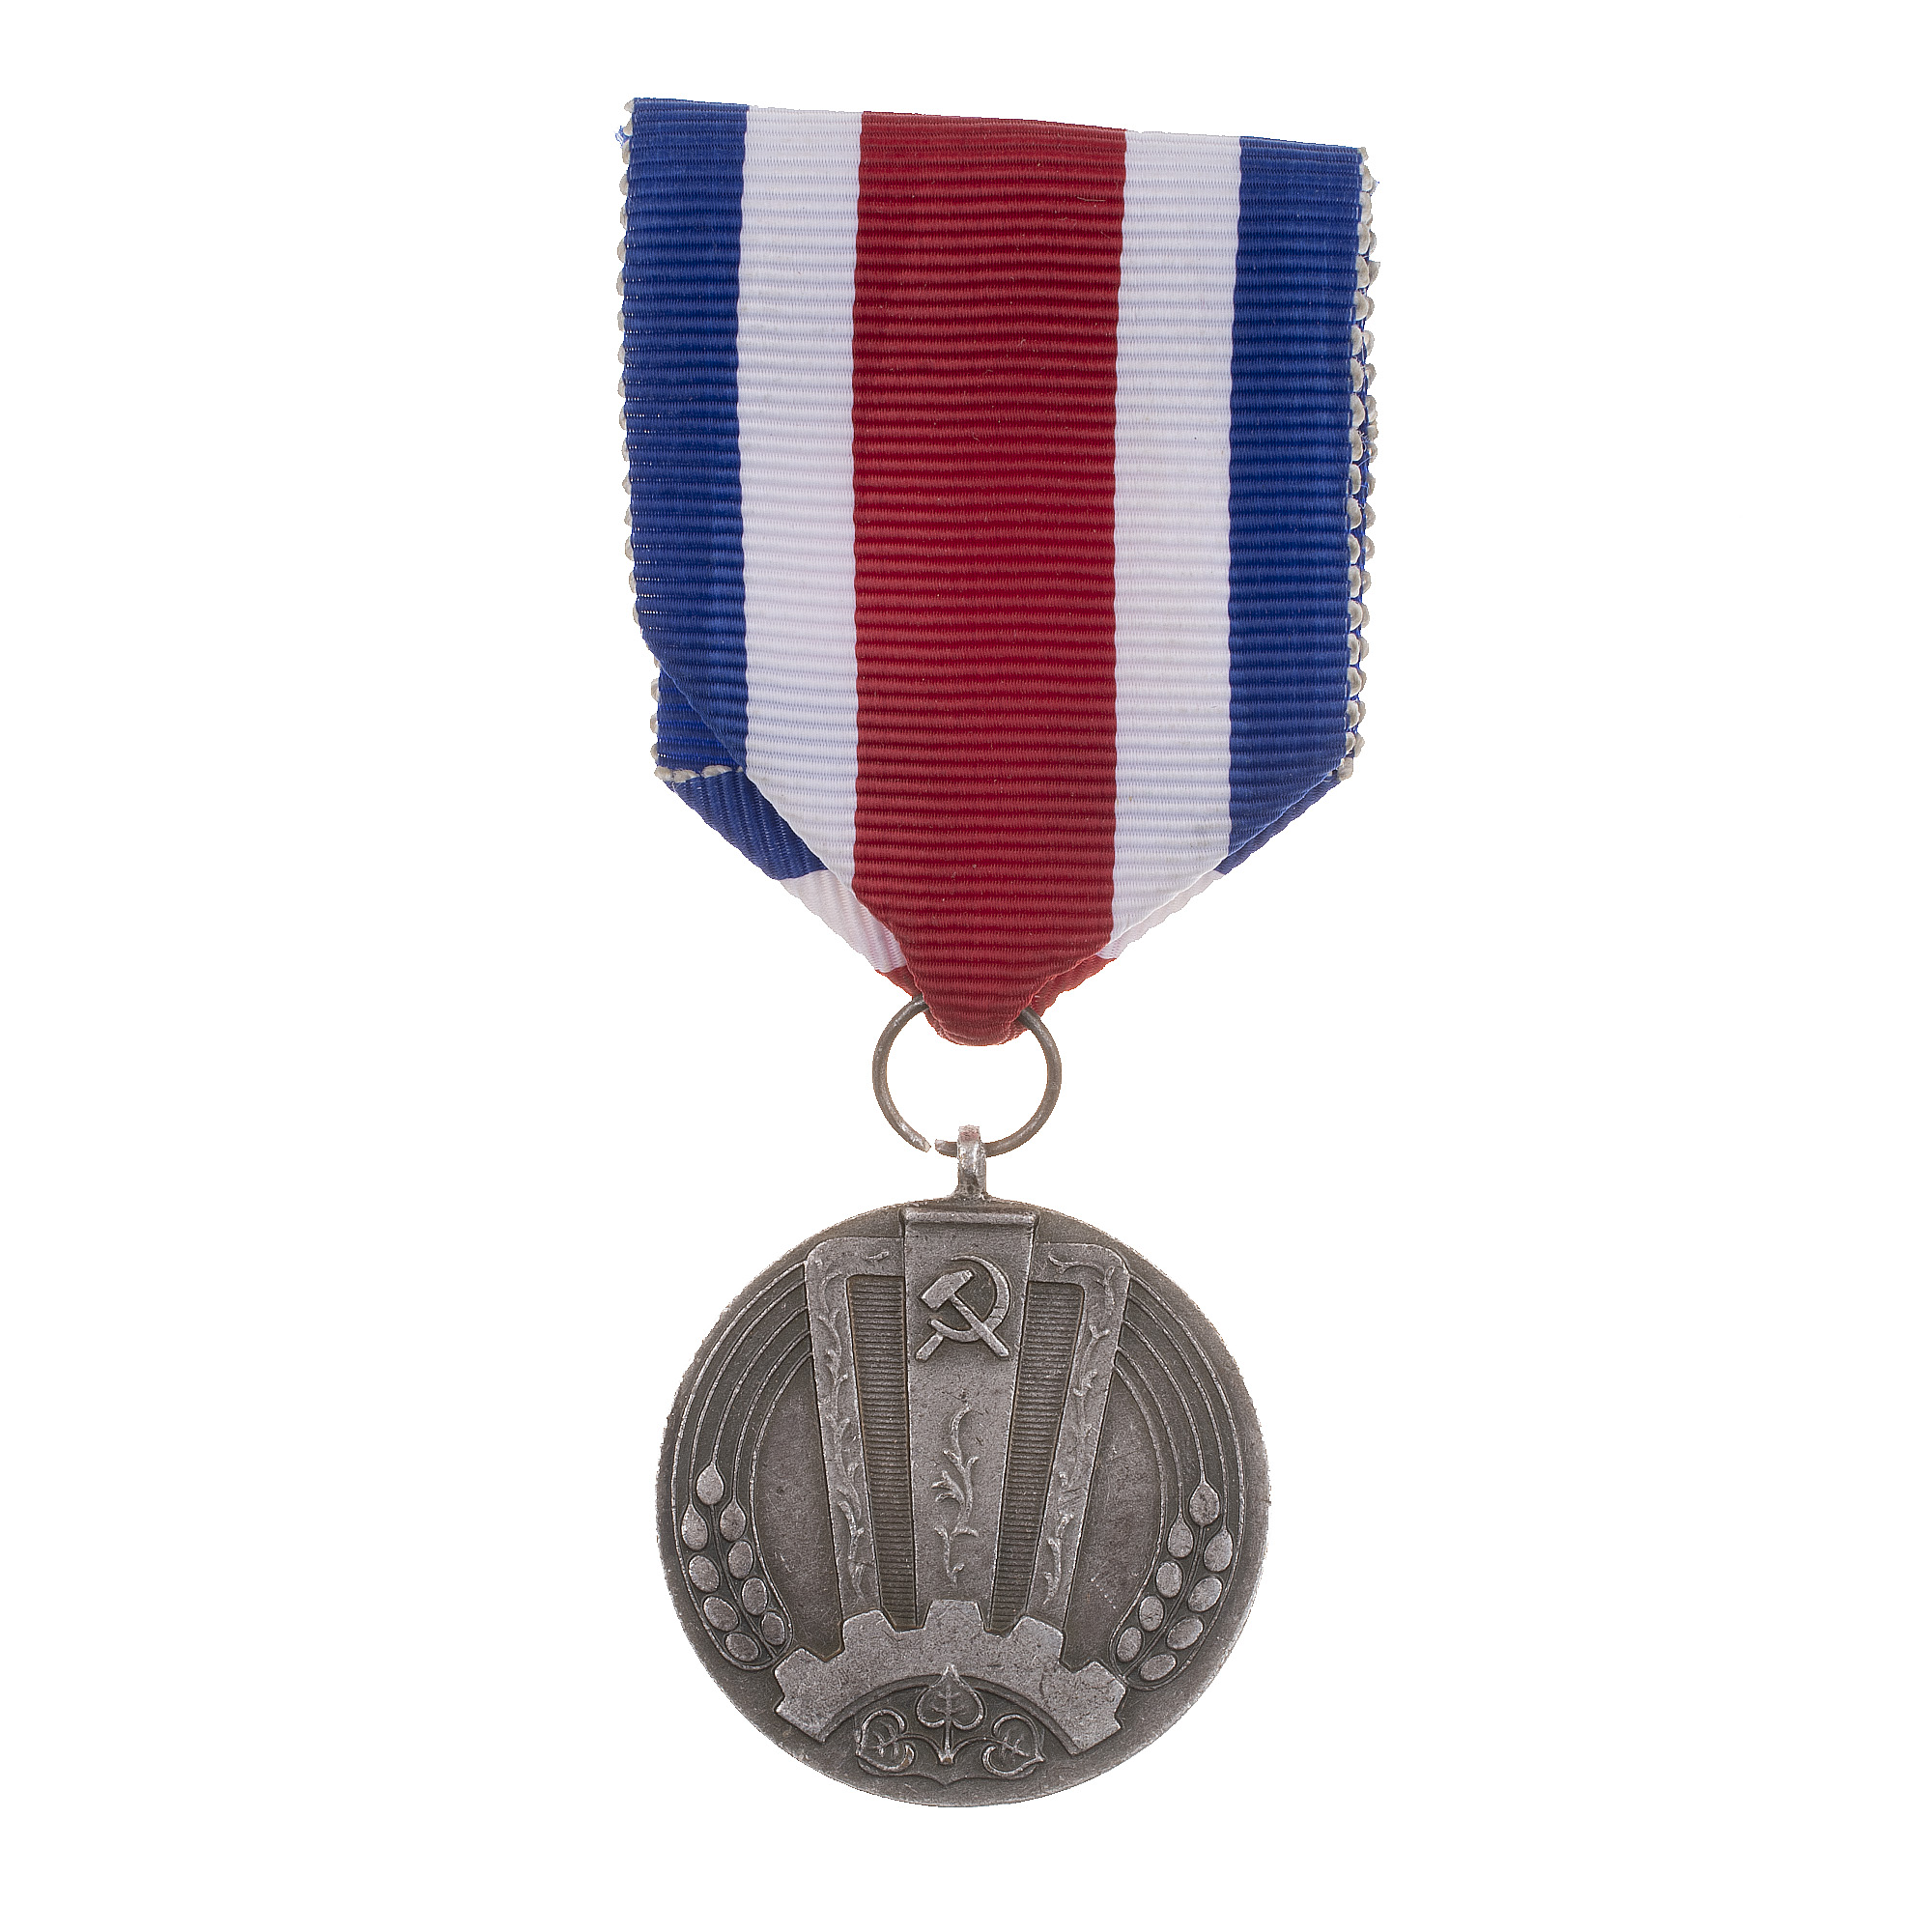 Чехословакия. Медаль "За заслуги"